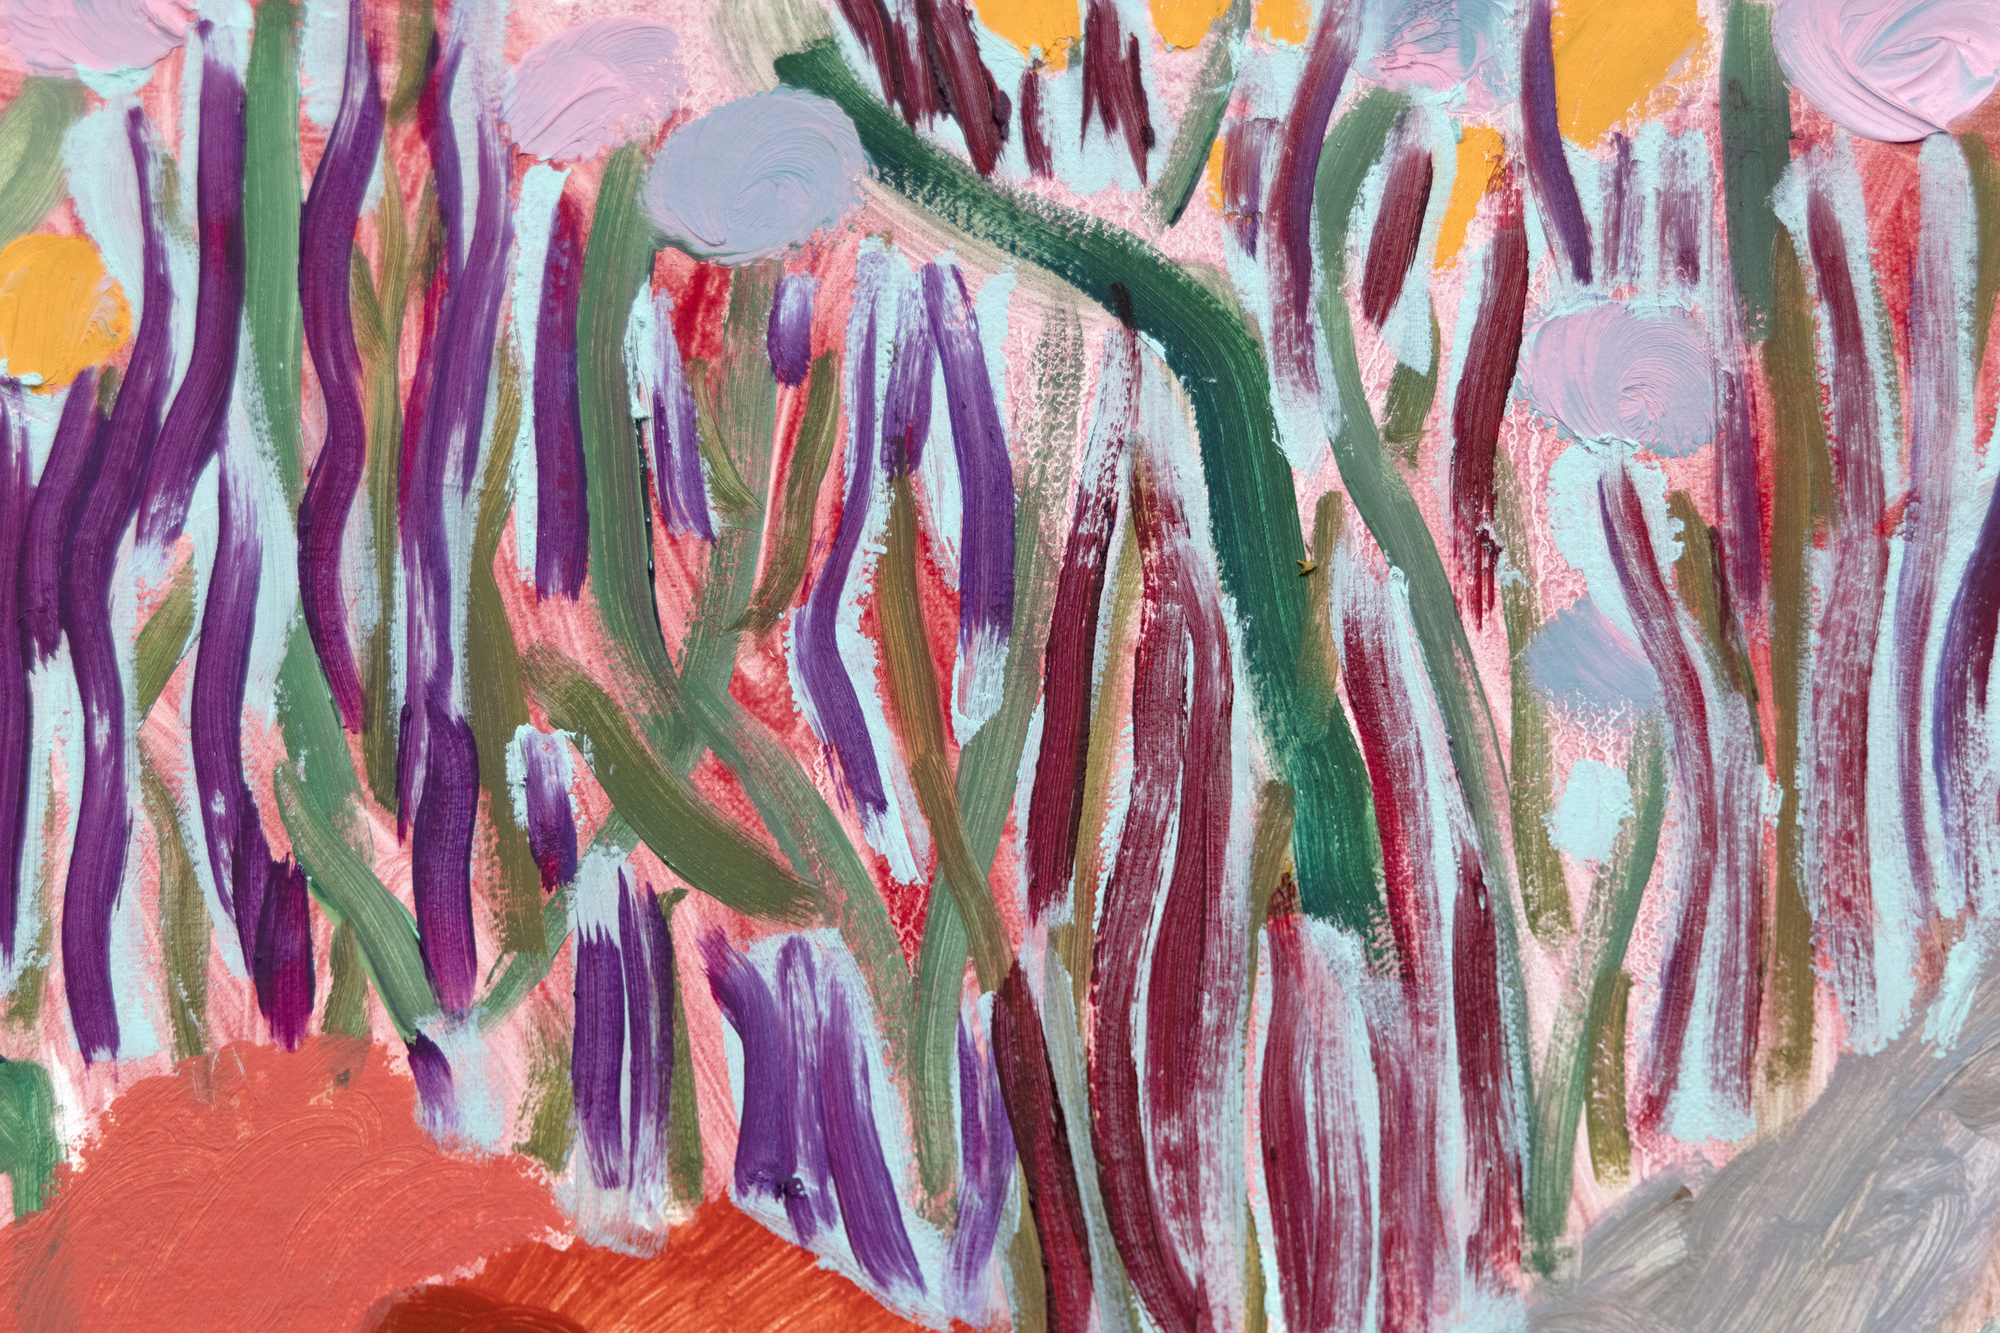 1981年アトランタ生まれ、ブルックリンを拠点に活動するシャラ・ヒューズは、歴史的な影響と現代的な感覚を融合させた風景画への独特なアプローチで知られている。彼女の陽気な色彩は、アンリ・マティスのような巨匠を彷彿とさせ、デヴィッド・ホックニーのスタイリッシュで大胆なビジュアルで伝える一方、アール・ヌーヴォー、フォーヴィスム、ドイツ表現主義からの影響を含む風景画の幅広い伝統を認めている。All the Pretty Faces』は、歴史的な芸術運動と現在のデジタルイメージの現代的な統合であり、過去と現在の架け橋となる魅惑的な創作の世界を観客に提示する。それはまた、幻想的な要素に満ちた彼女の革新的な風景画について、ヒューズの最も印象的な言葉の一つを物語っている：「私はしばしば、花や木々を人物のように考えてきました。時には、絵の中の波や太陽に人格が宿ることもあるので、作品の仕上がりによって様々です。&quot;